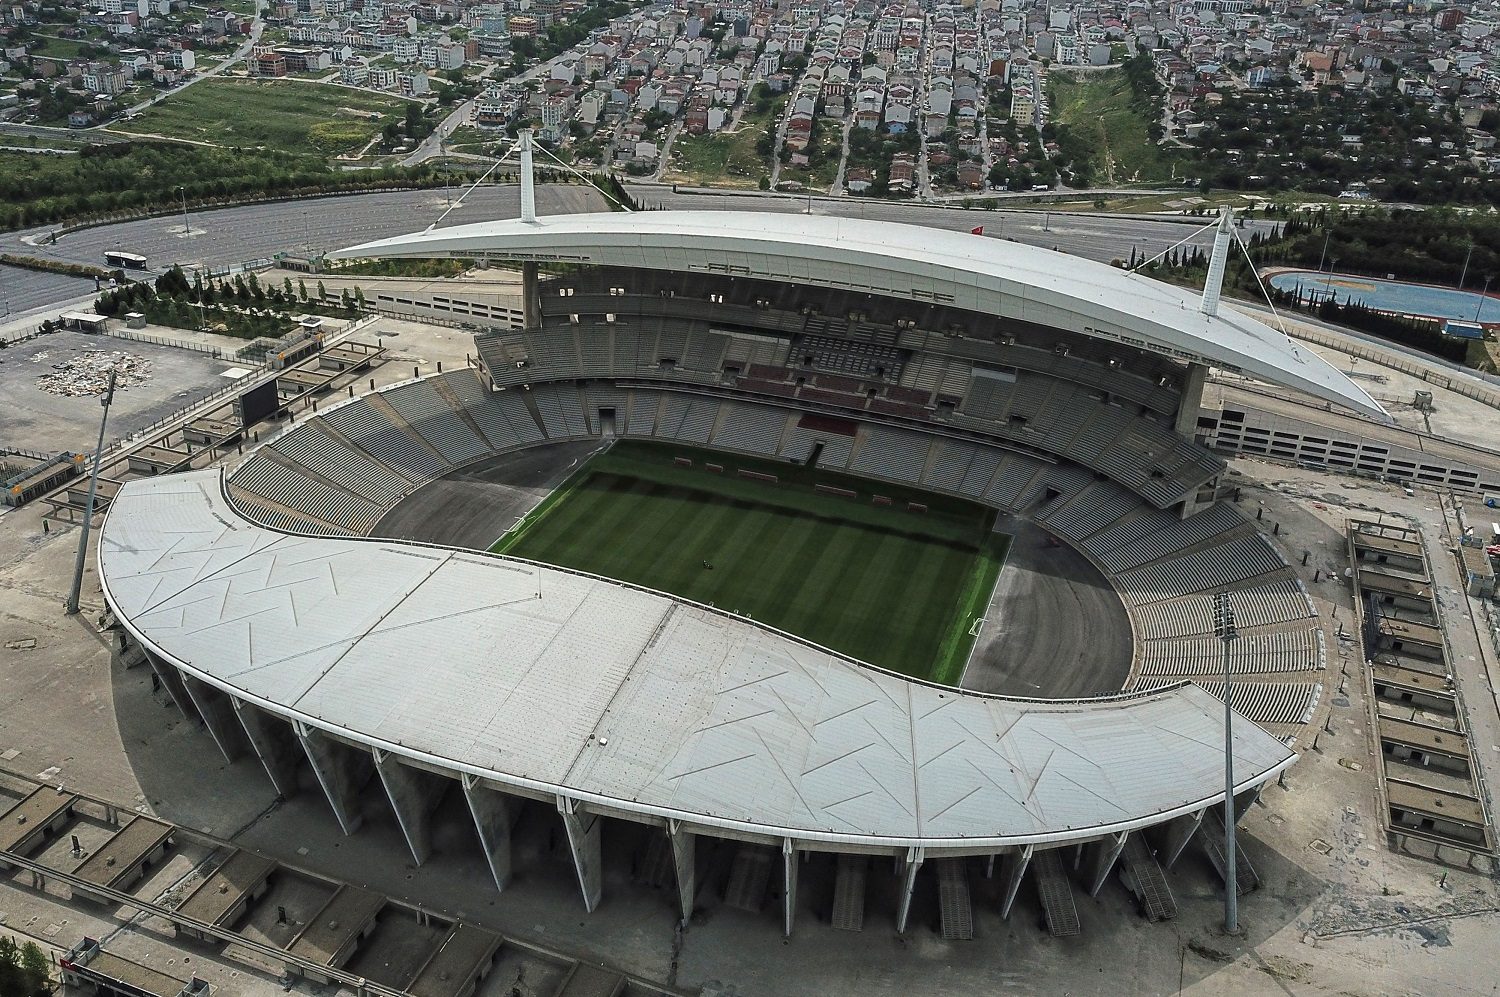 Atatürk-Olympiastadion